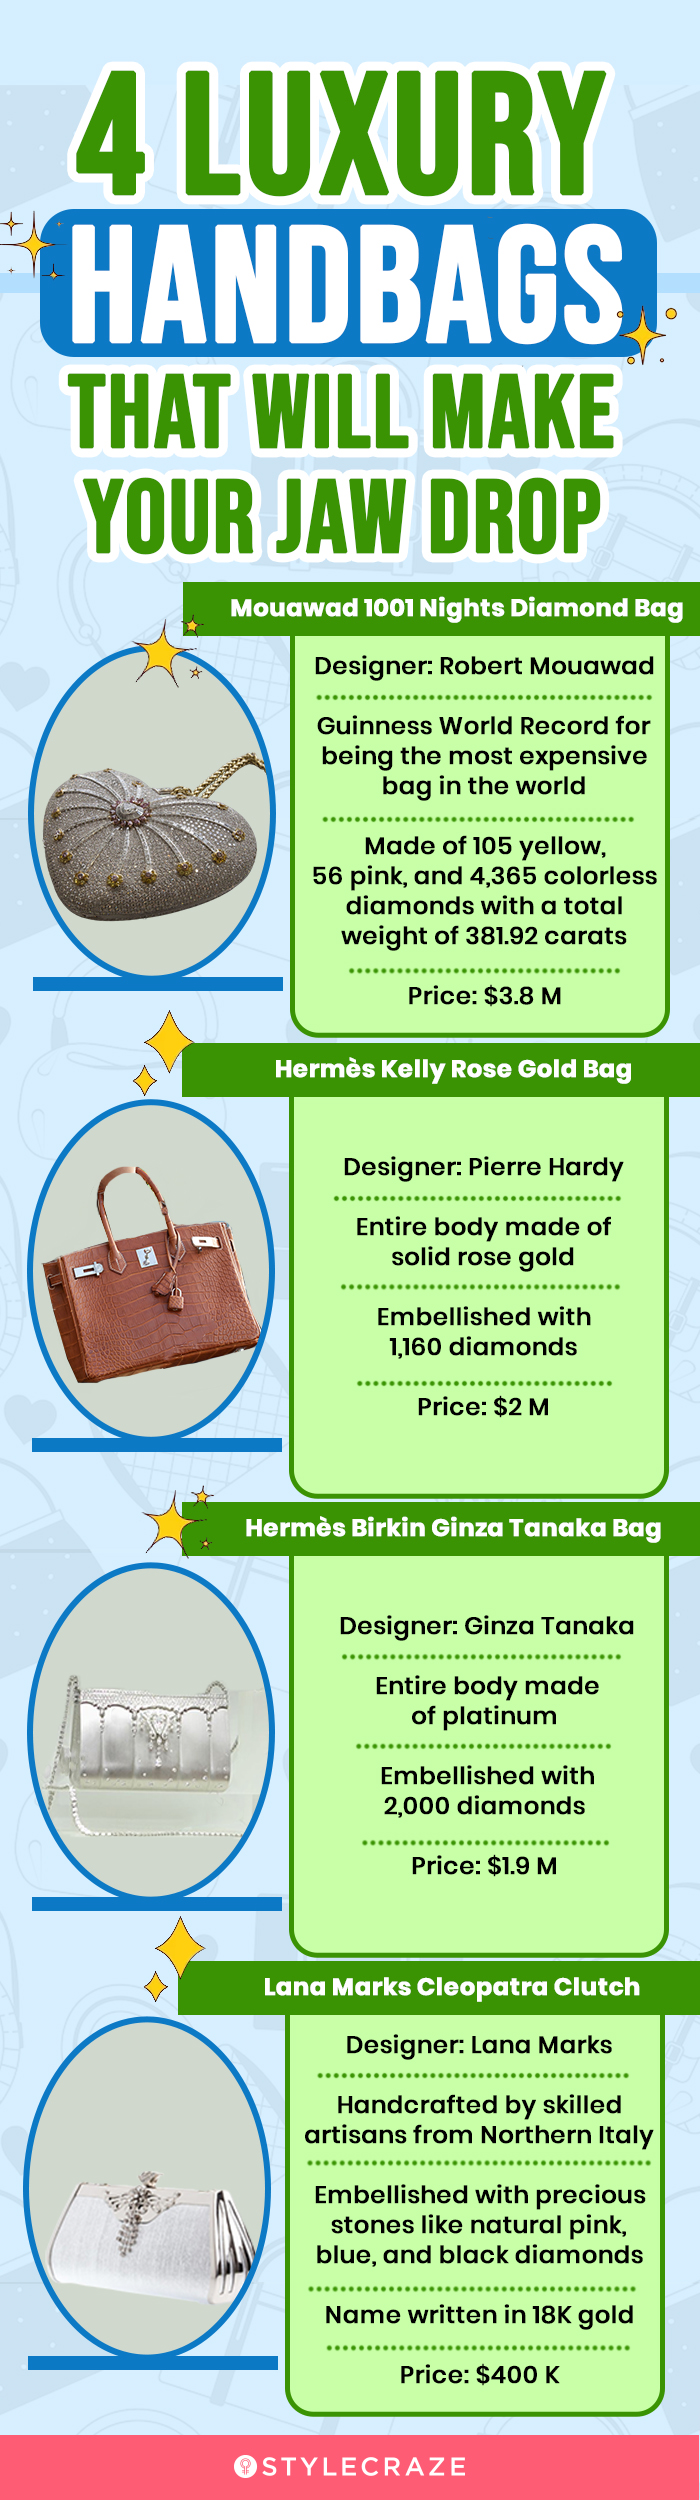 Hermes Birkin bag sells for world record HK$1.72 million